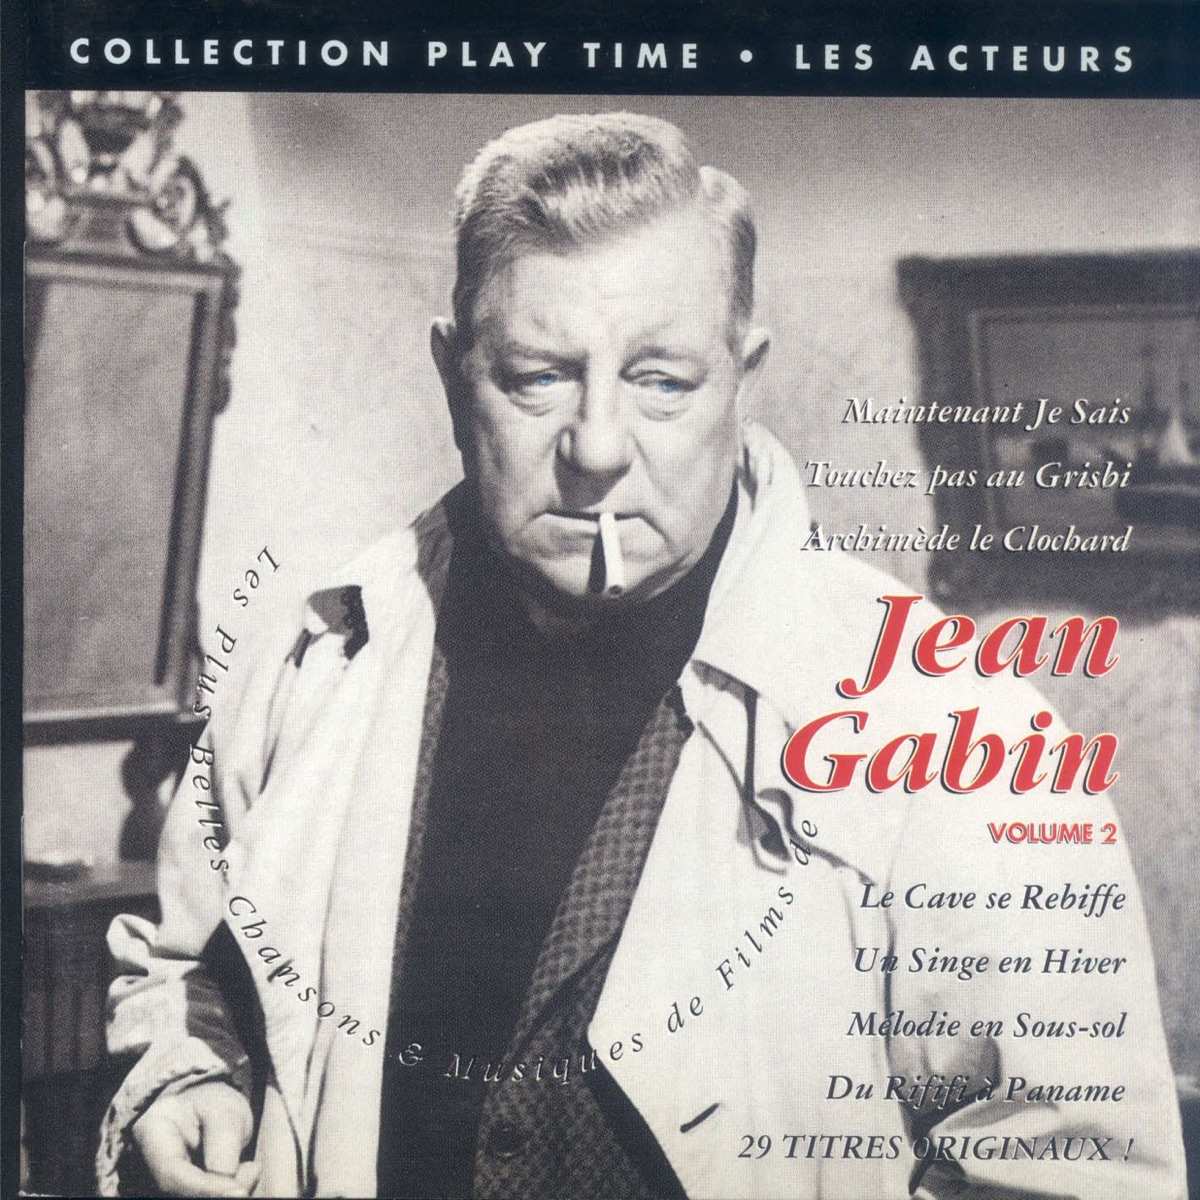 Les plus belles musiques de films de Jean Gabin, Vol. 2 – Album par Jean  Gabin – Apple Music